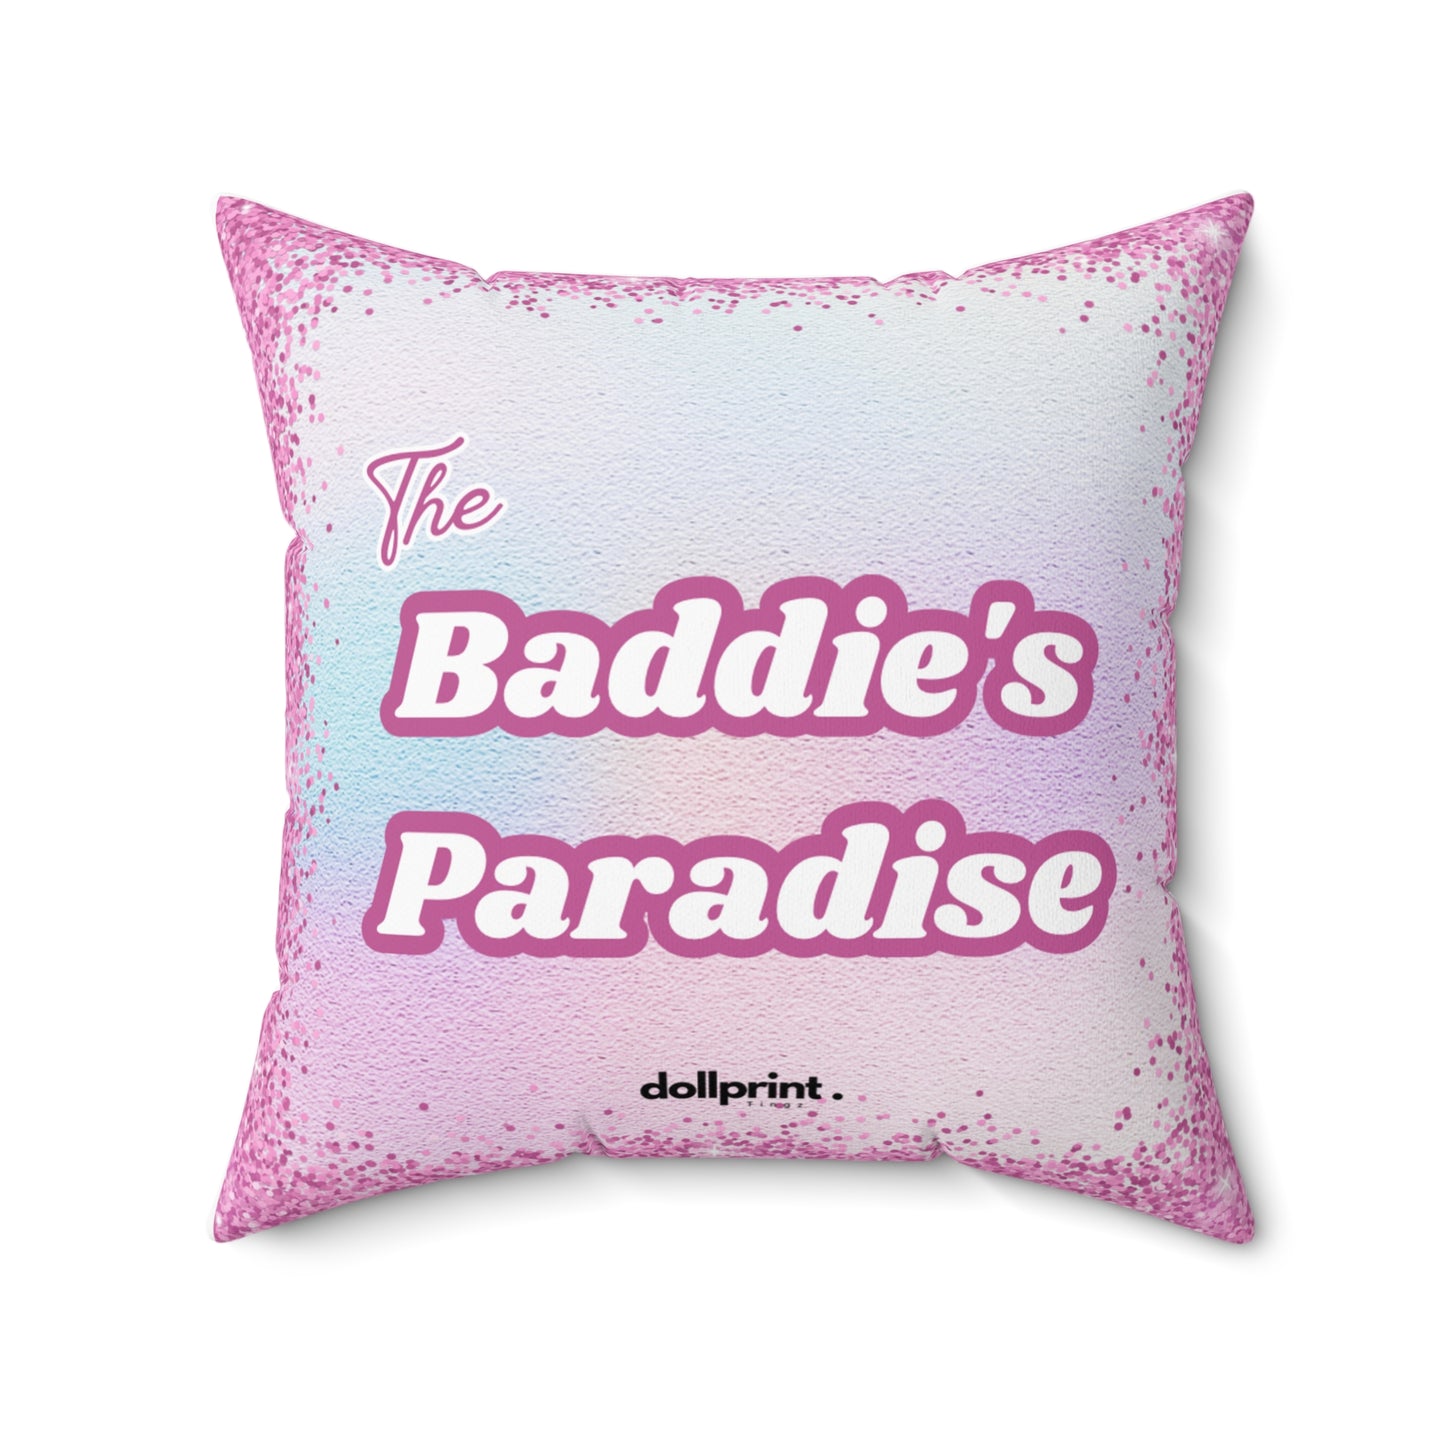 Baddies Paradise Spun Polyester Square Pillow